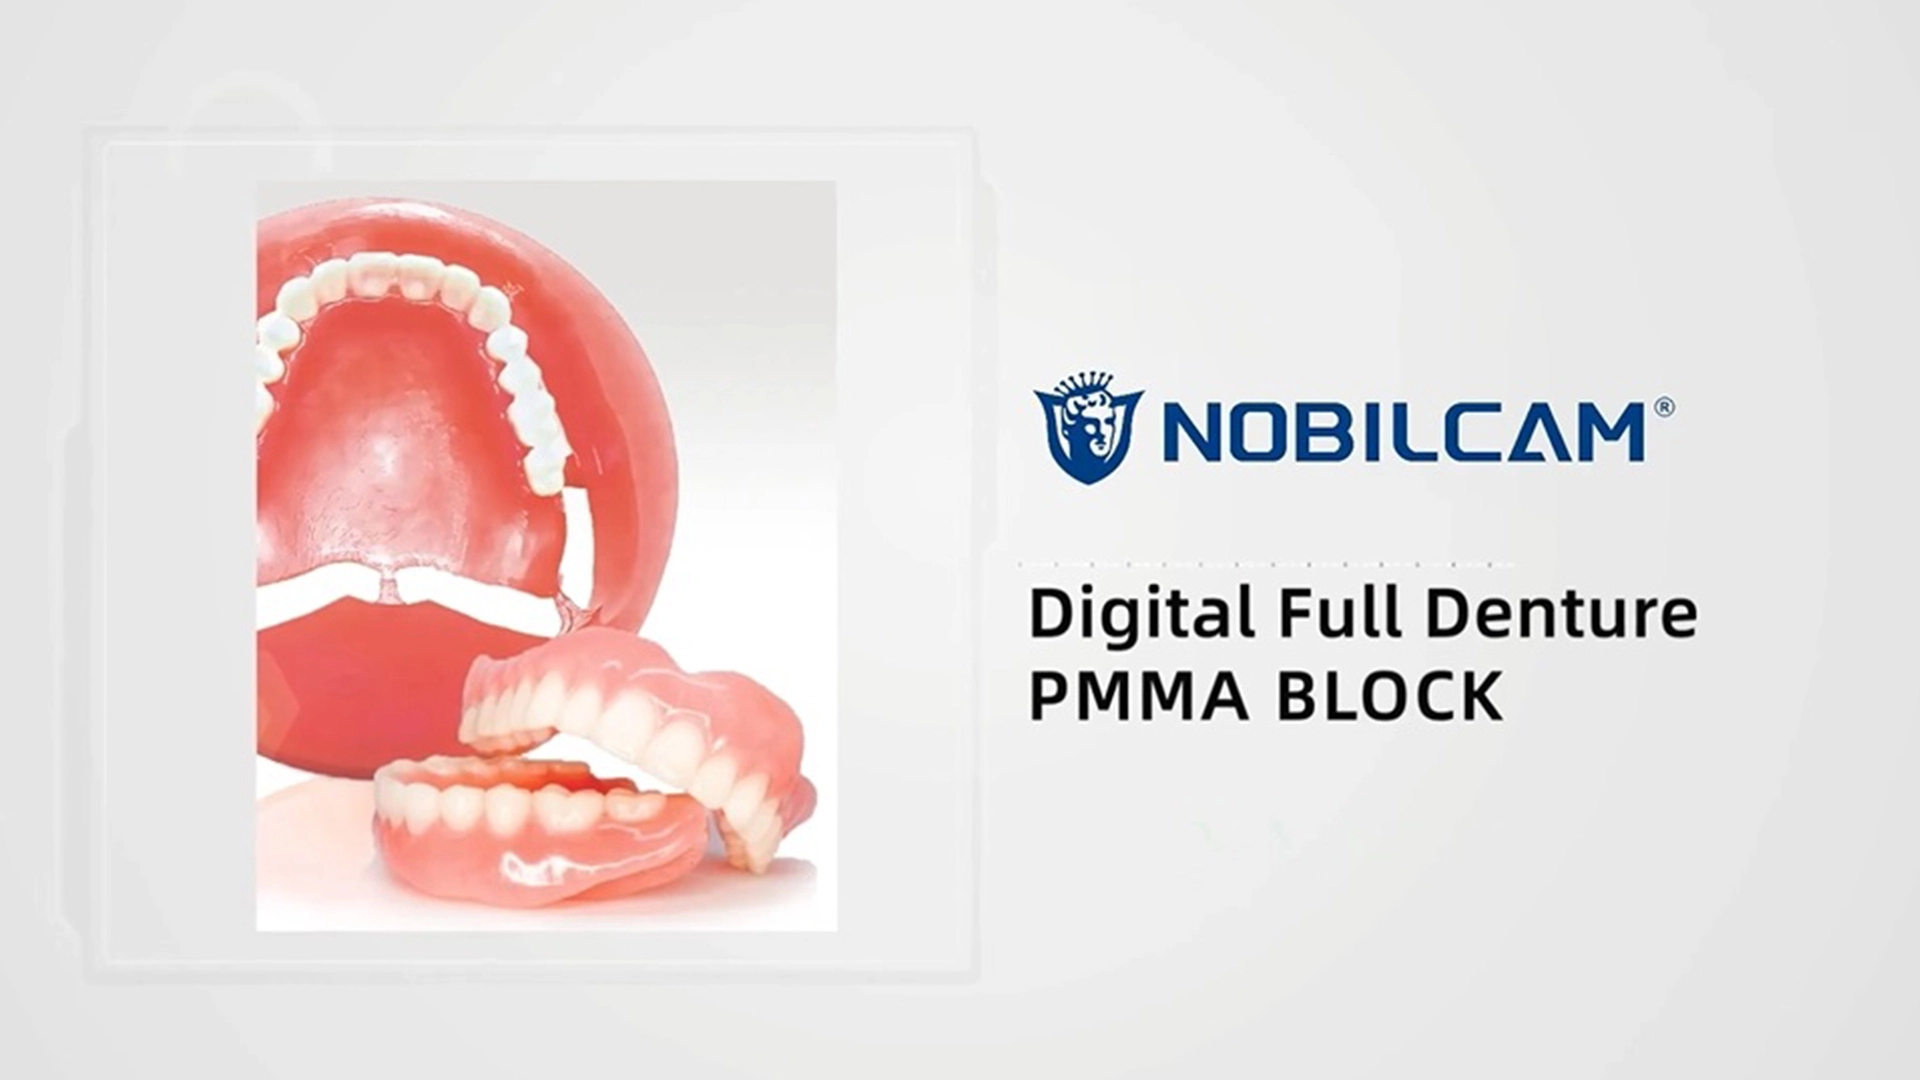 NOBILCAM Digital Full Denture PMMA Block